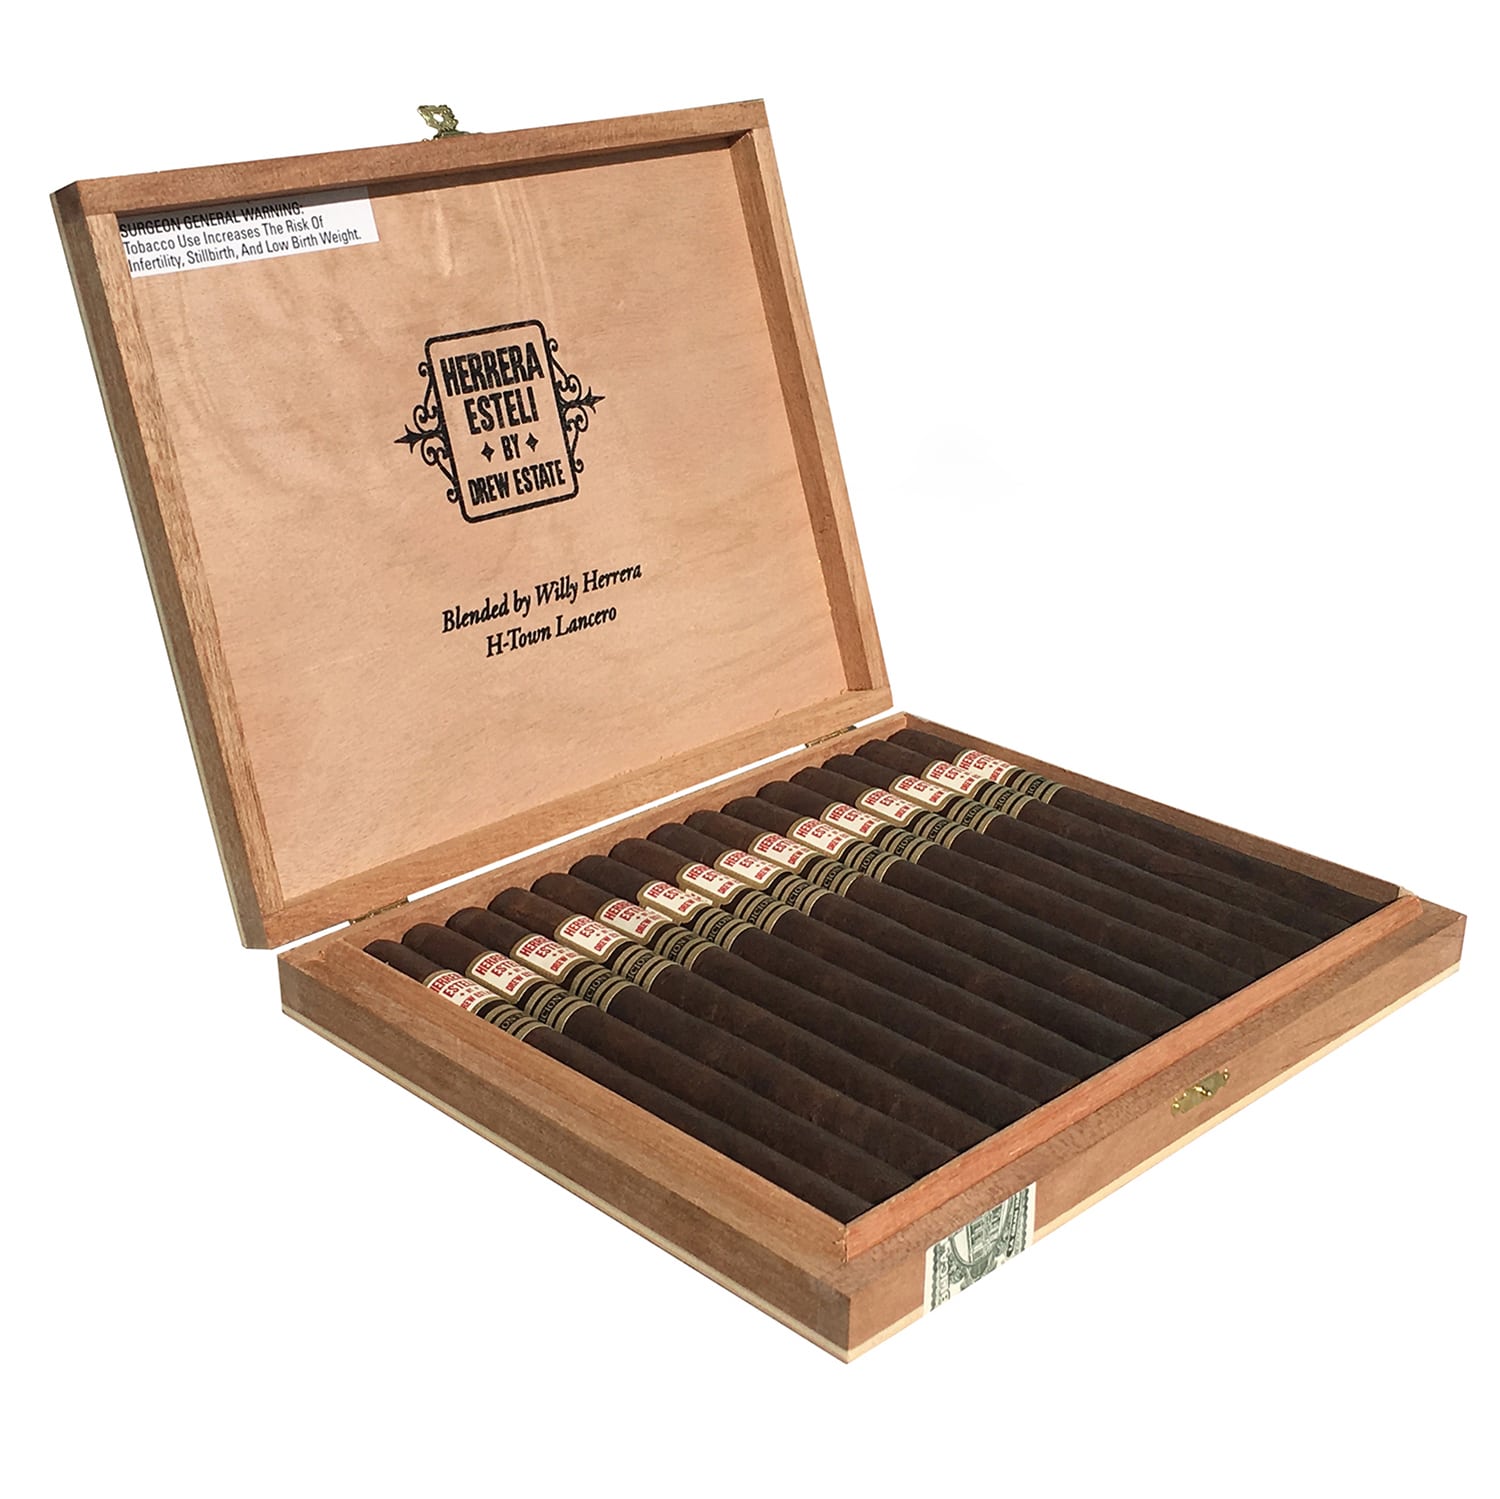 Herrera Estelí Edicíon Limitada H-Town Lancero cigar box open